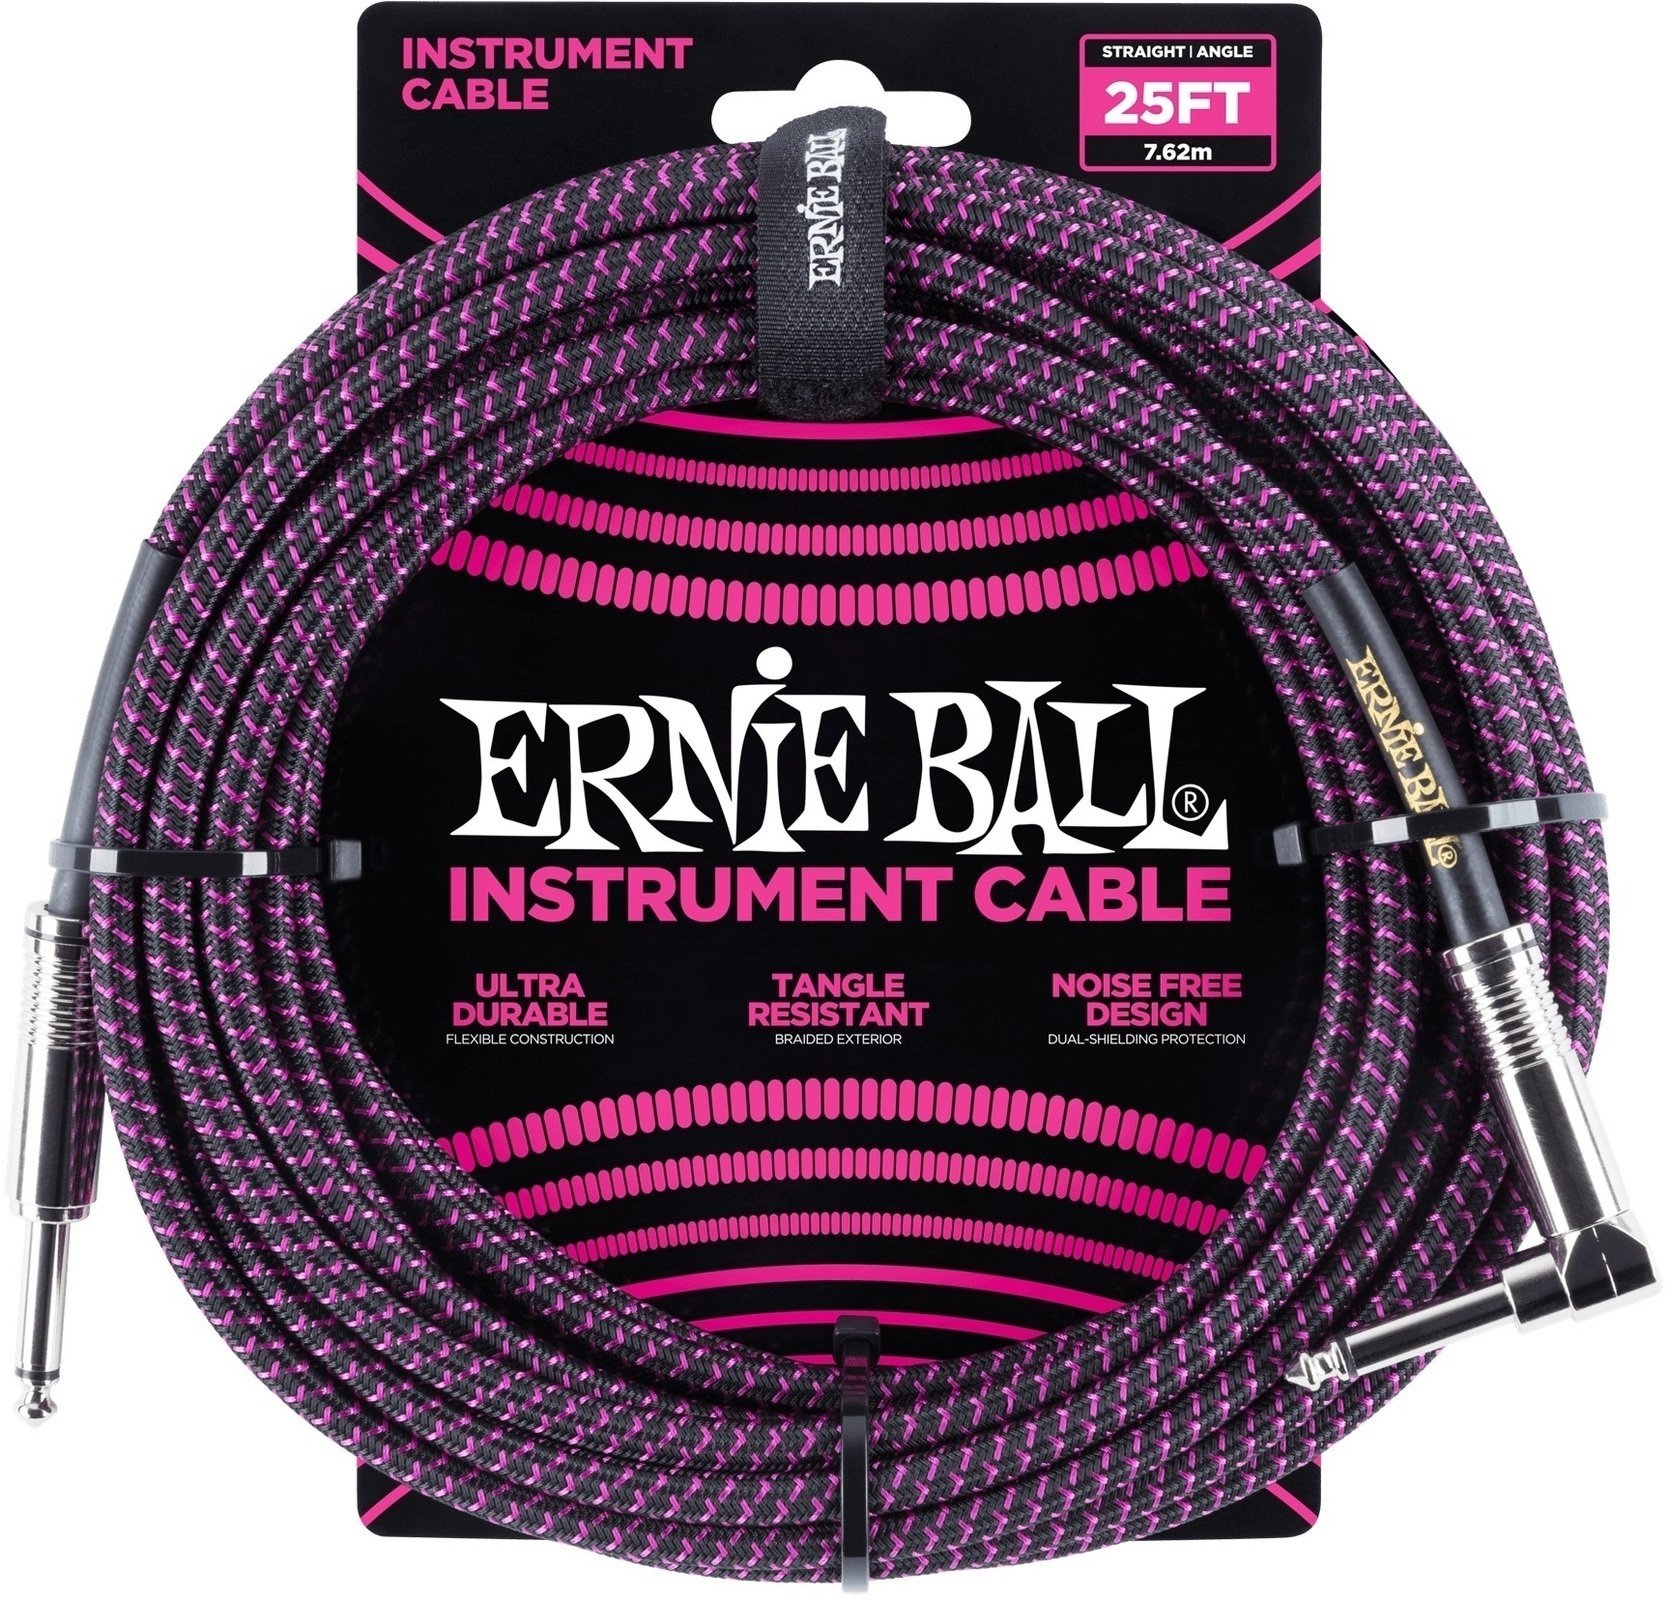 Cabo do instrumento Ernie Ball P06068 Preto-Violeta 7,5 m Reto - Angular